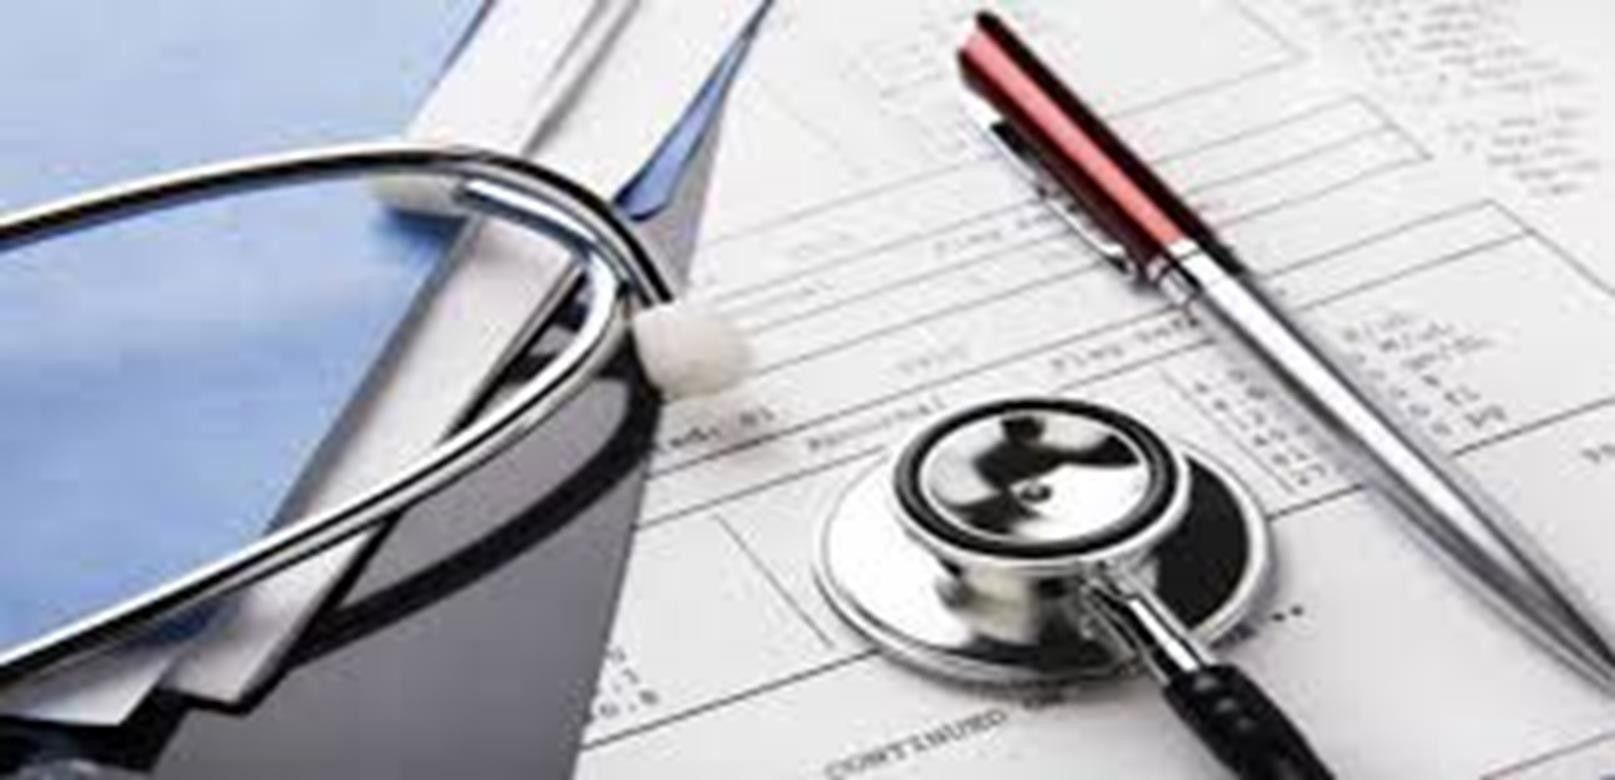 Serviços de Medicina Ocupacional Melhores Valores na Cidade Ademar - Medicina Ocupacional no ABC